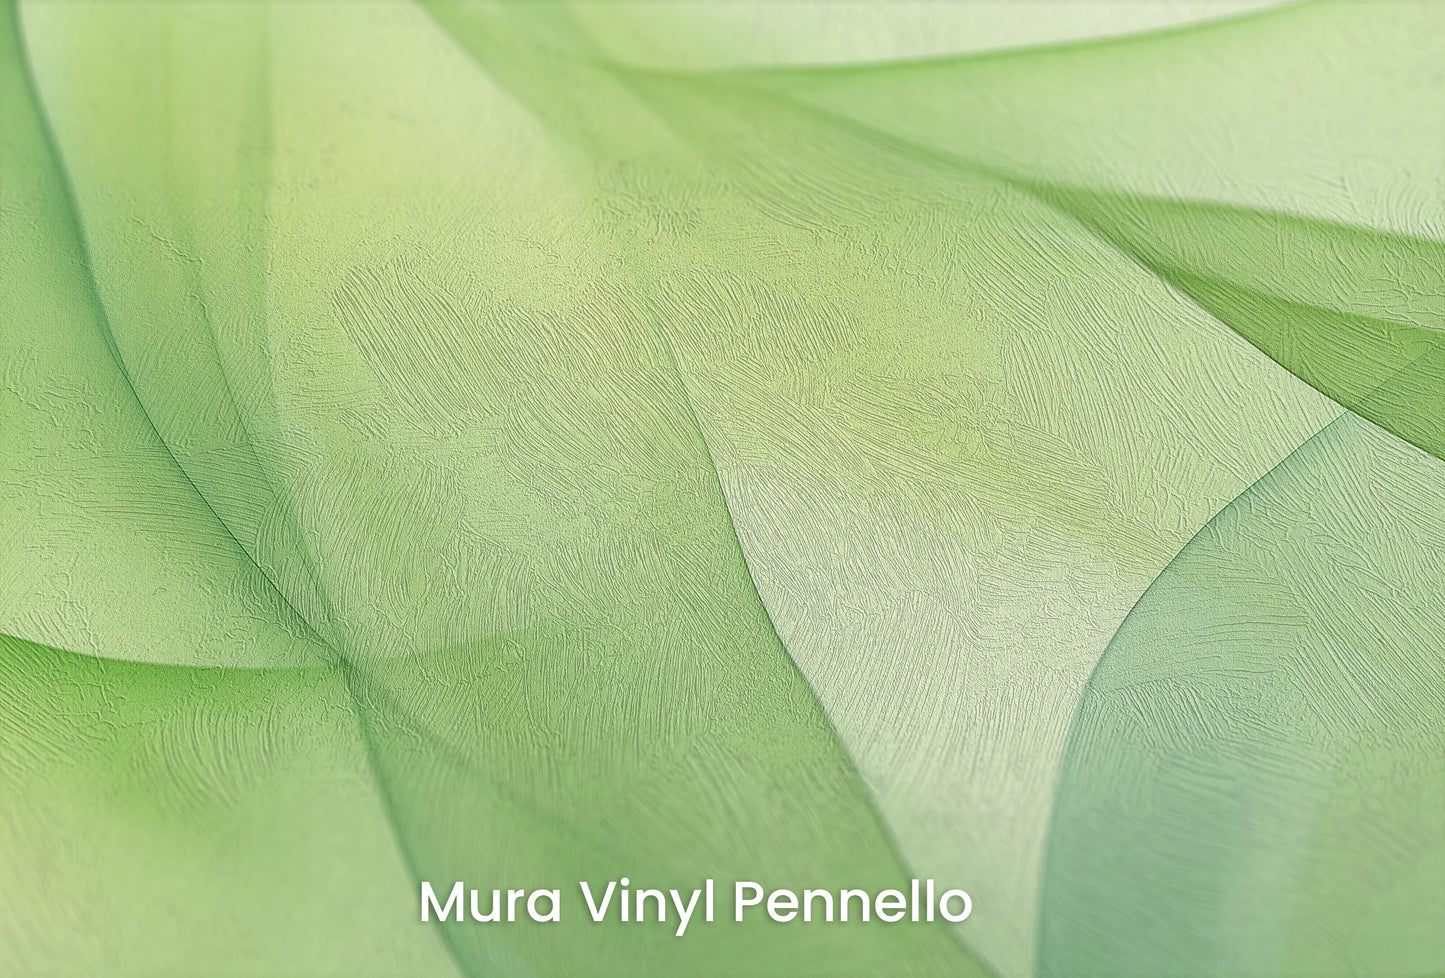 Zbliżenie na artystyczną fototapetę o nazwie Zielone Marzenie na podłożu Mura Vinyl Pennello - faktura pociągnięć pędzla malarskiego.